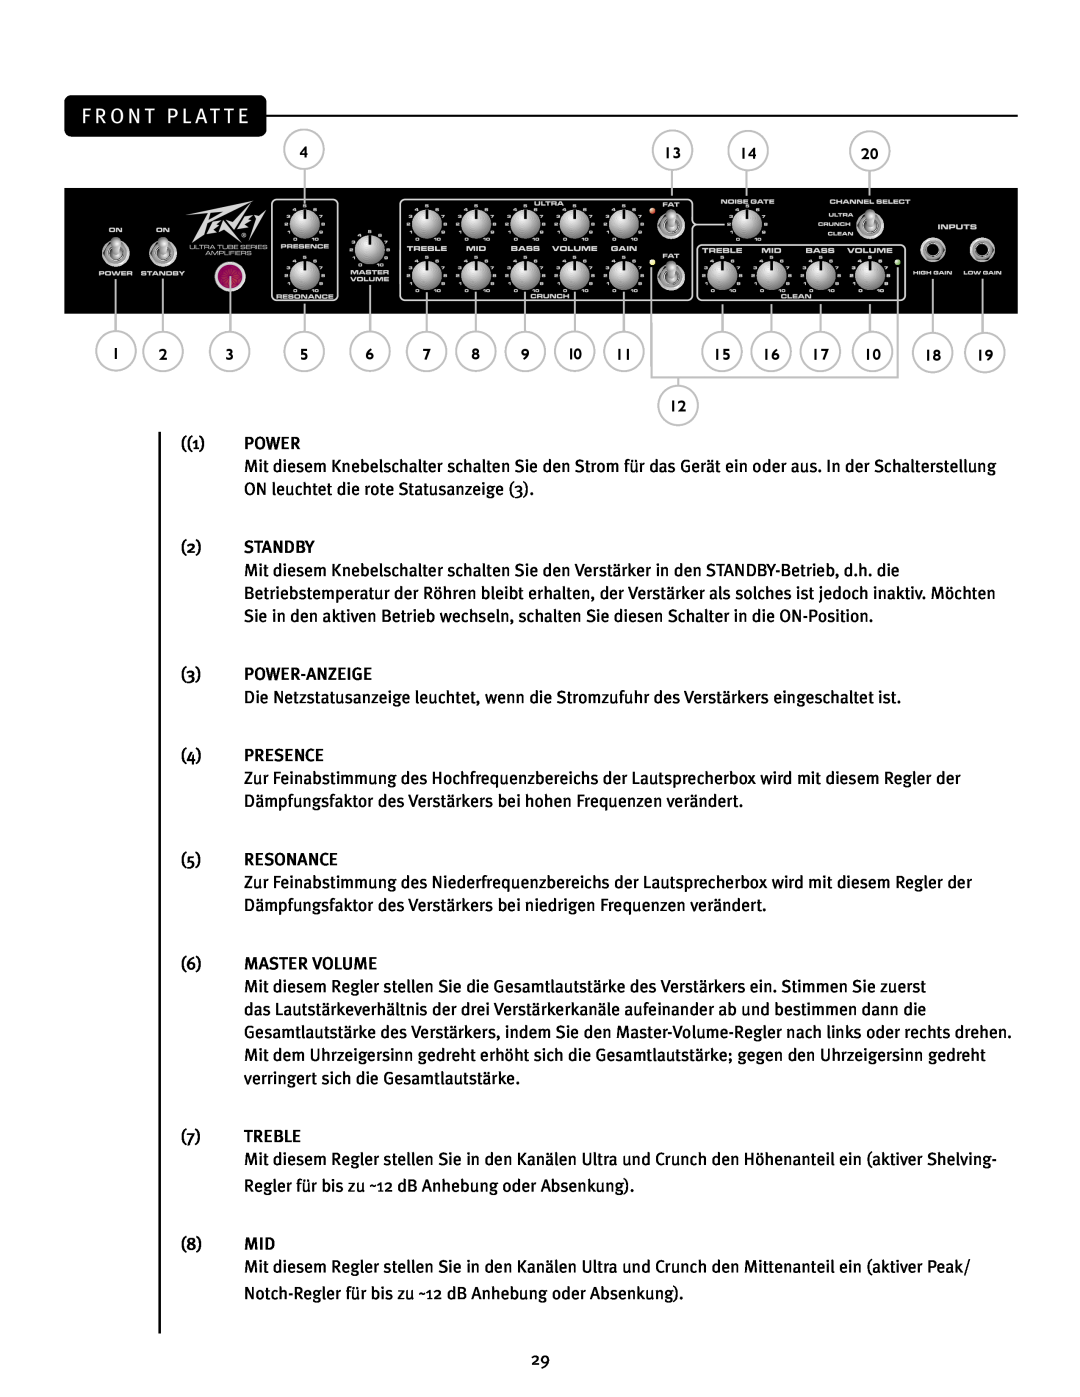 Peavey JSX Joe Satriani Signature All-Tube Amplifier manual F R O N T P L At T E, Power, ON leuchtet die rote Statusanzeige 